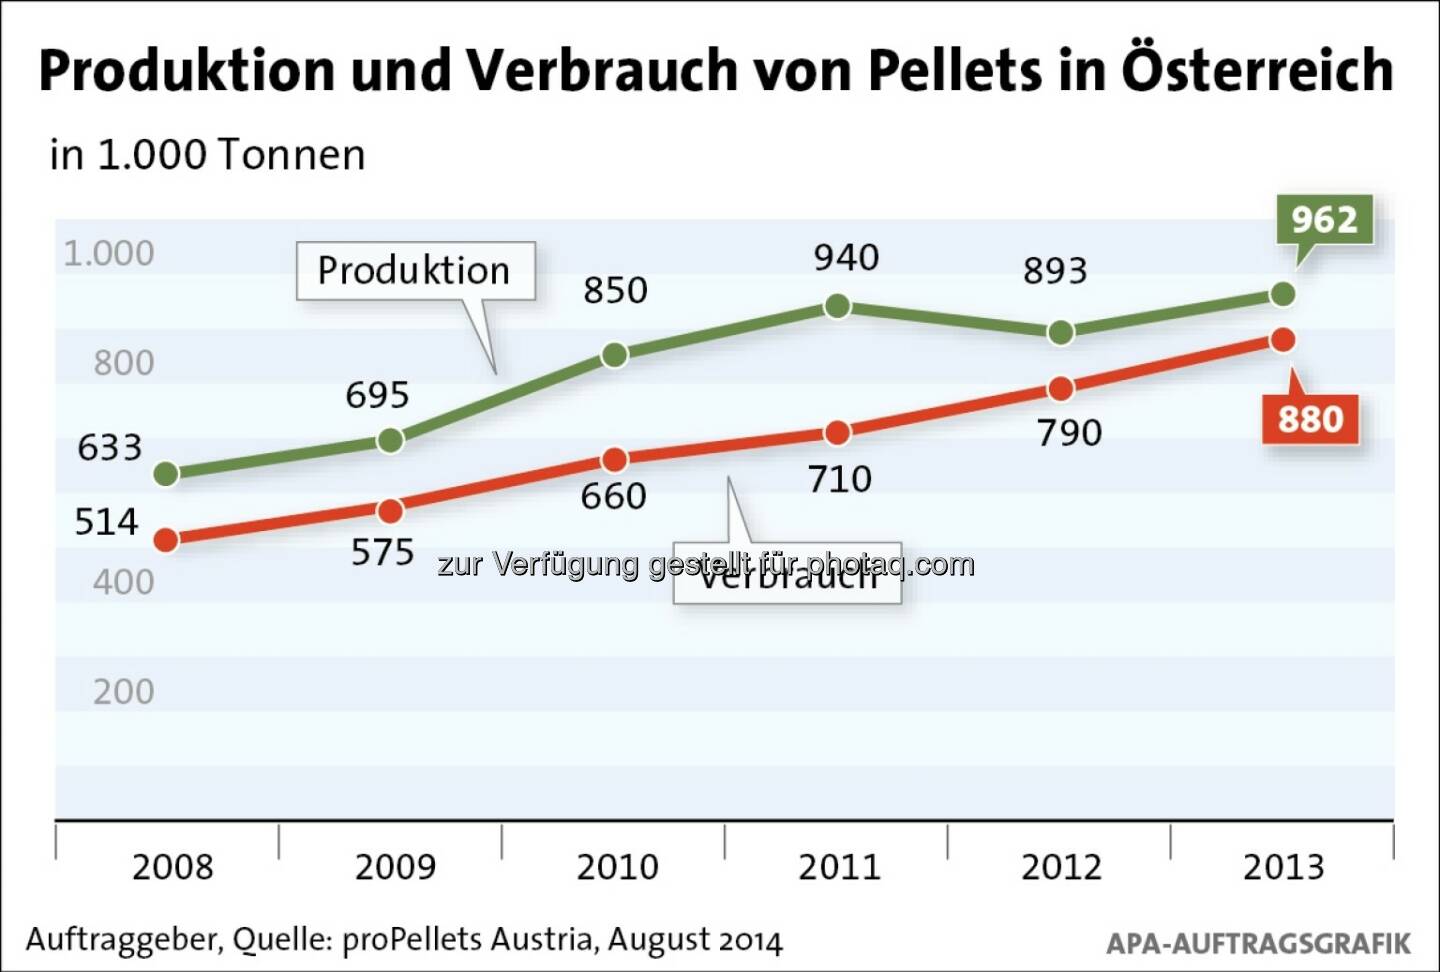 proPellets Austria: Produktion und Verbrauch von Pellets in Österreich